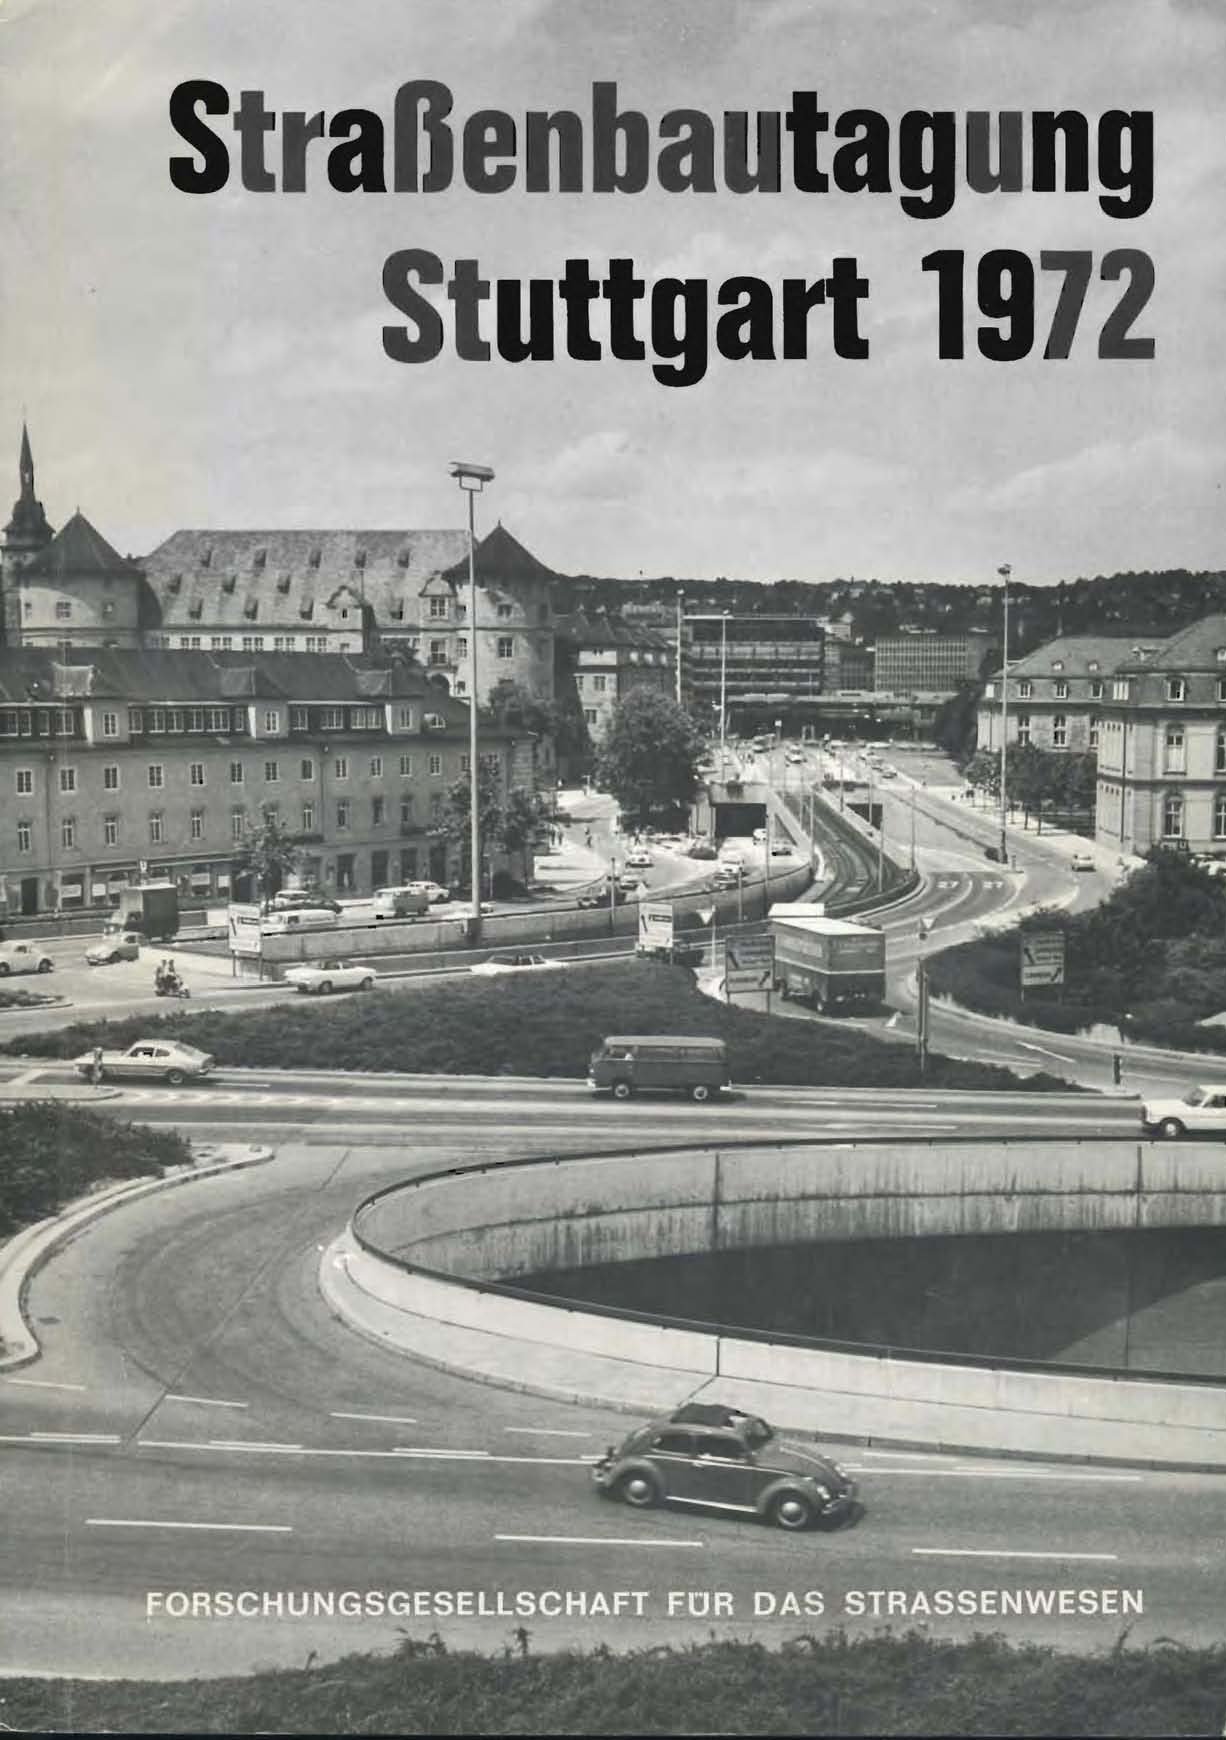 Straußenbautagung Stuttgart 1972